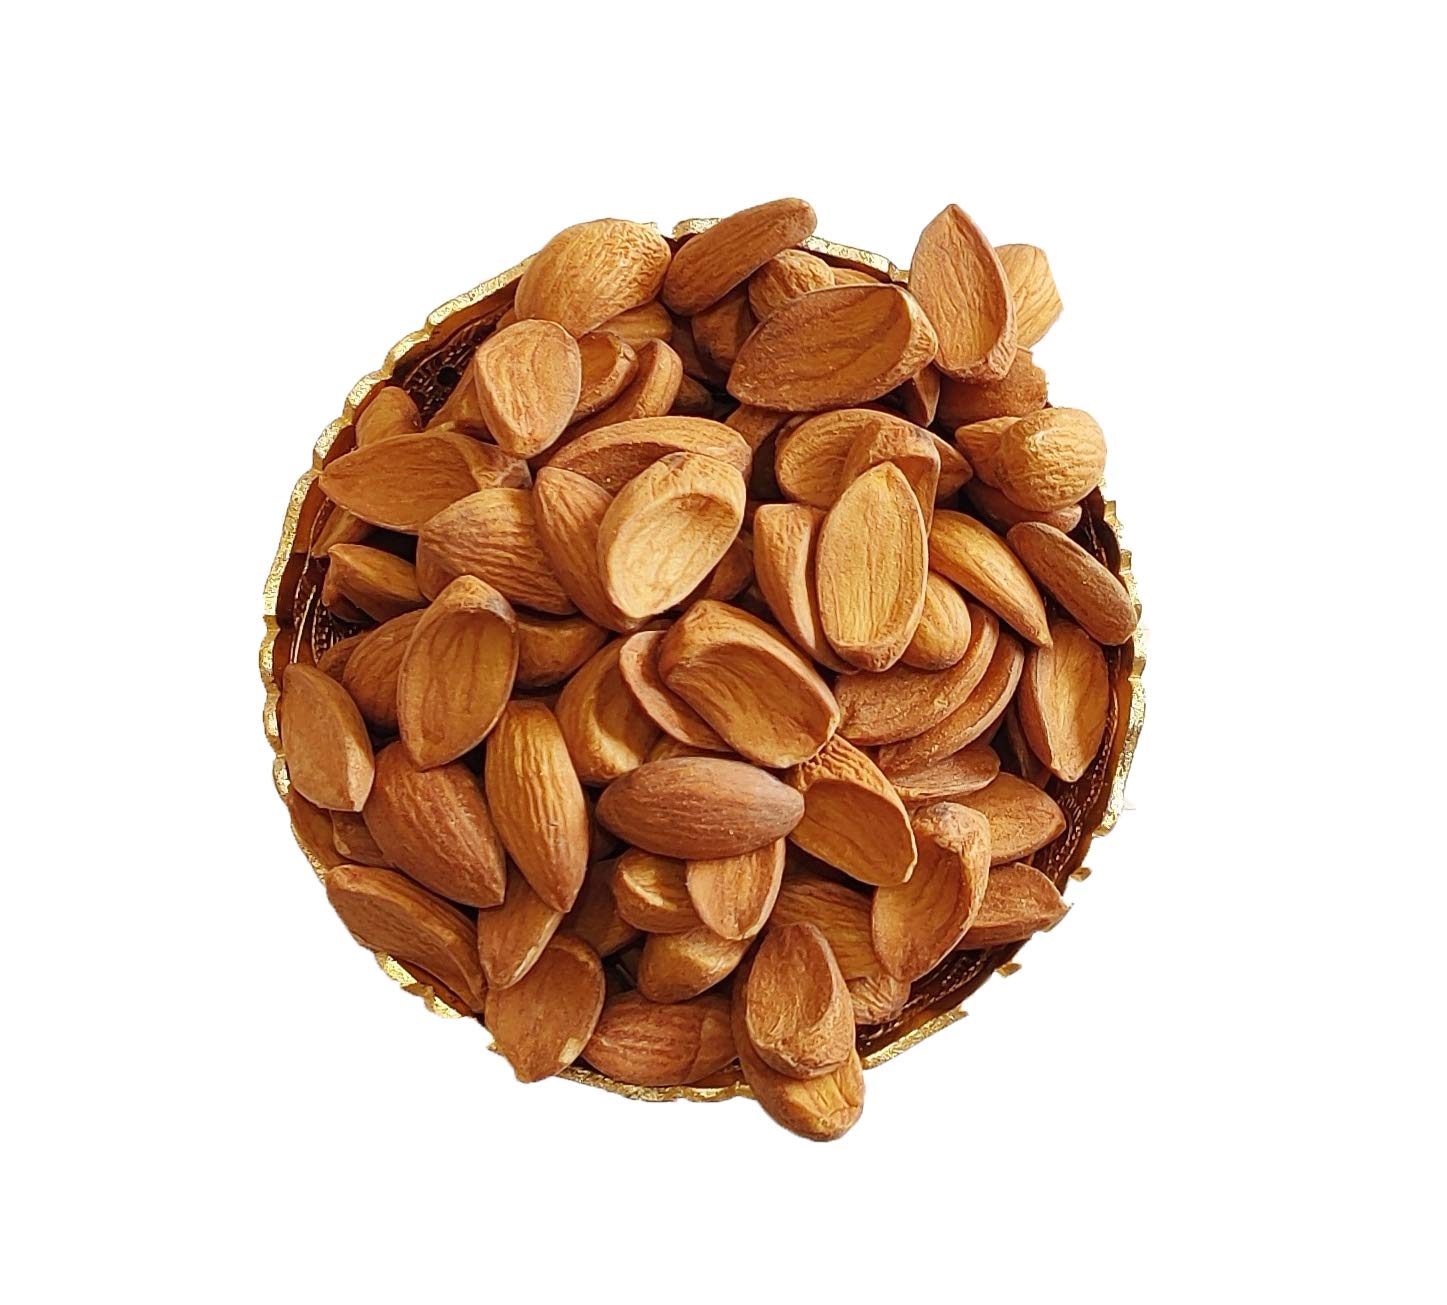 Price of quality packaged Mamra almonds | Mamra Irani